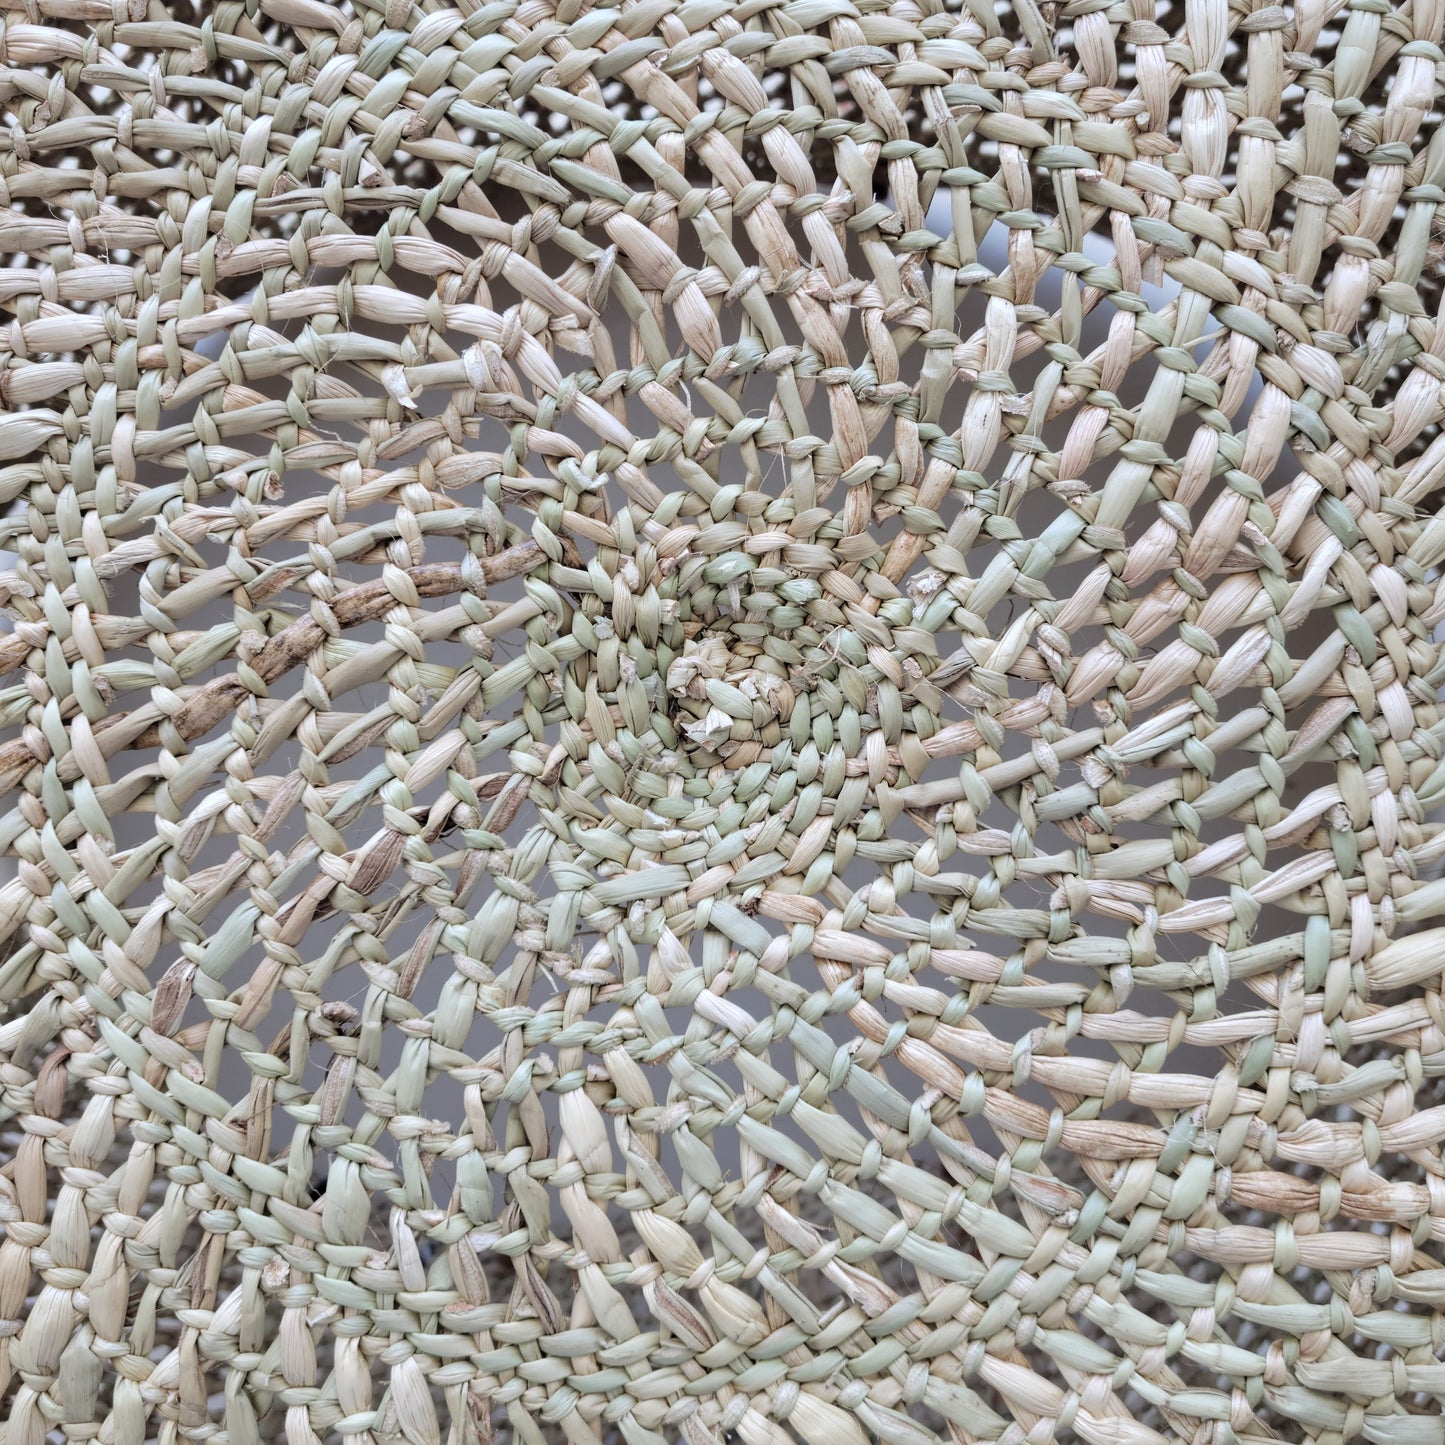 Floor basket with handles/Natural open weave XXL